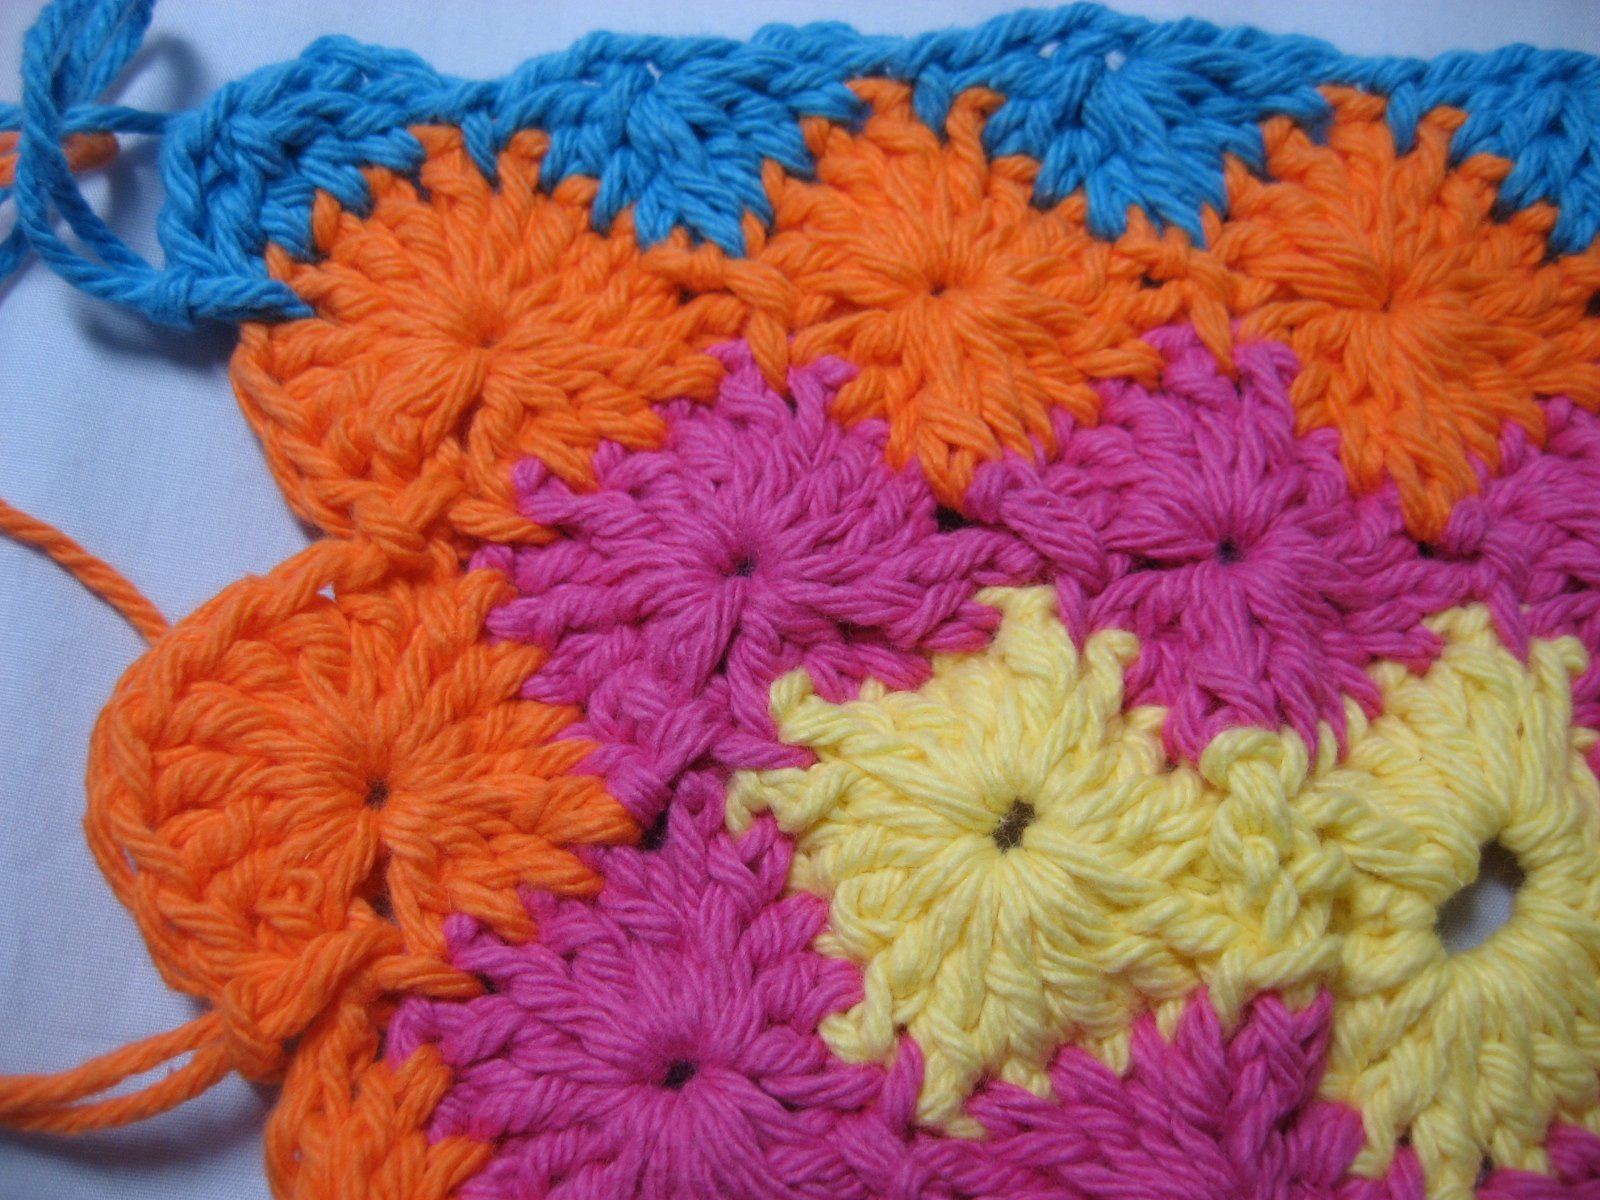 Catherine Wheel Crochet Blanket Pattern Hooked On Needles Crocheted Catherine Wheel Video Tutorial